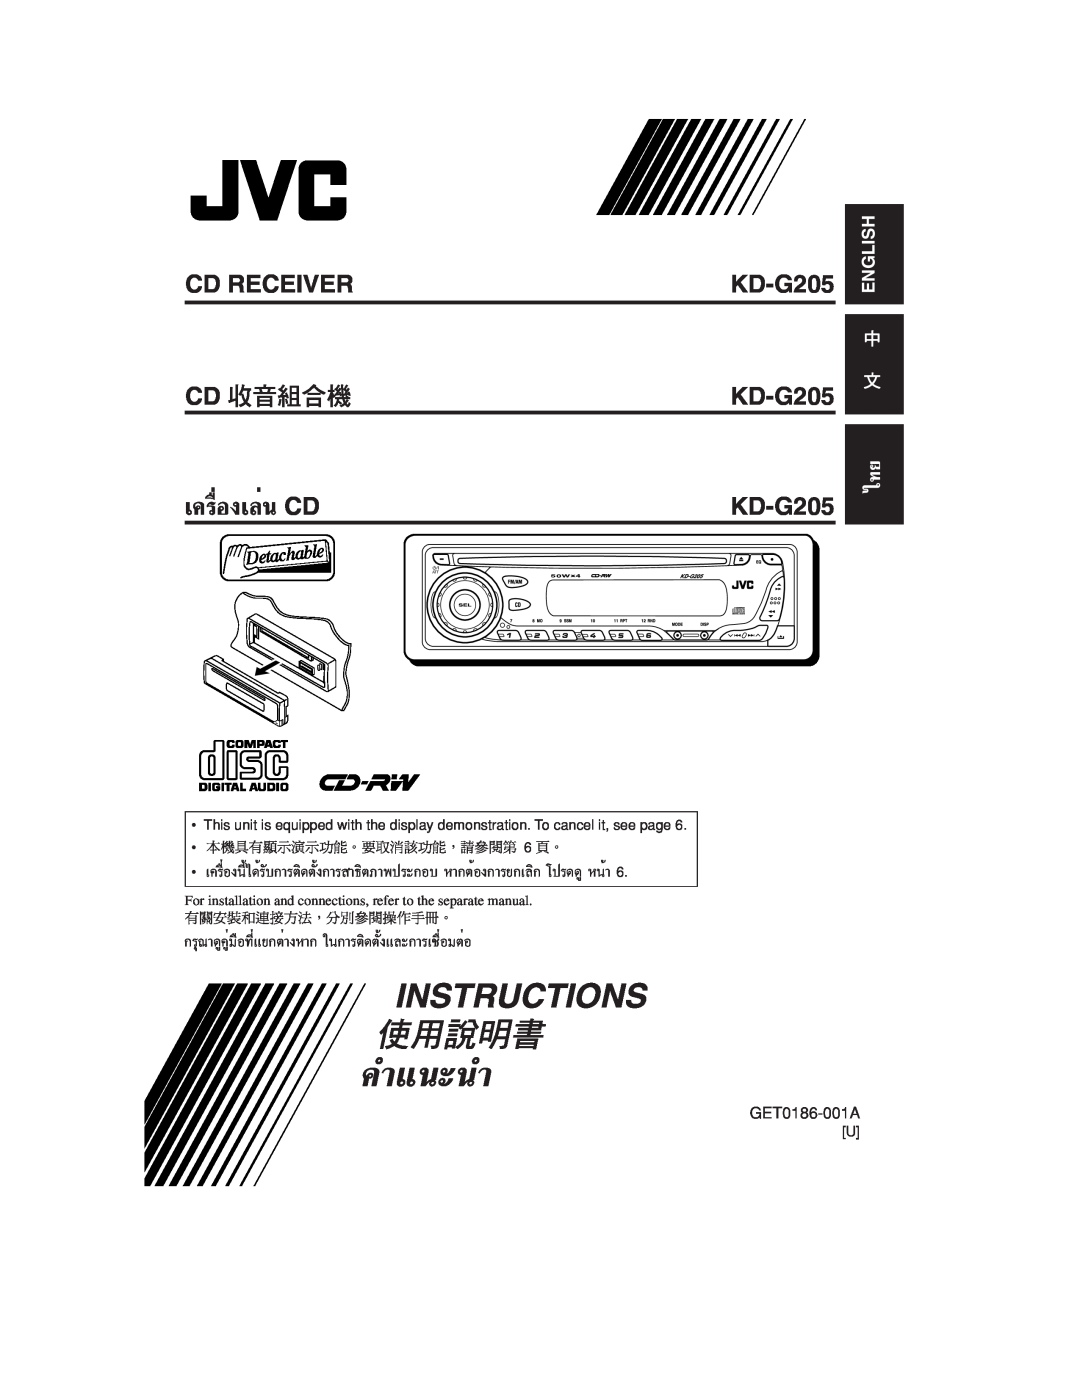 JVC KD-G205 manual ‡§√ËÕß‡≈Ëπ CD, Cd Receiver Cd, §”·π-π”, Instructions, English 